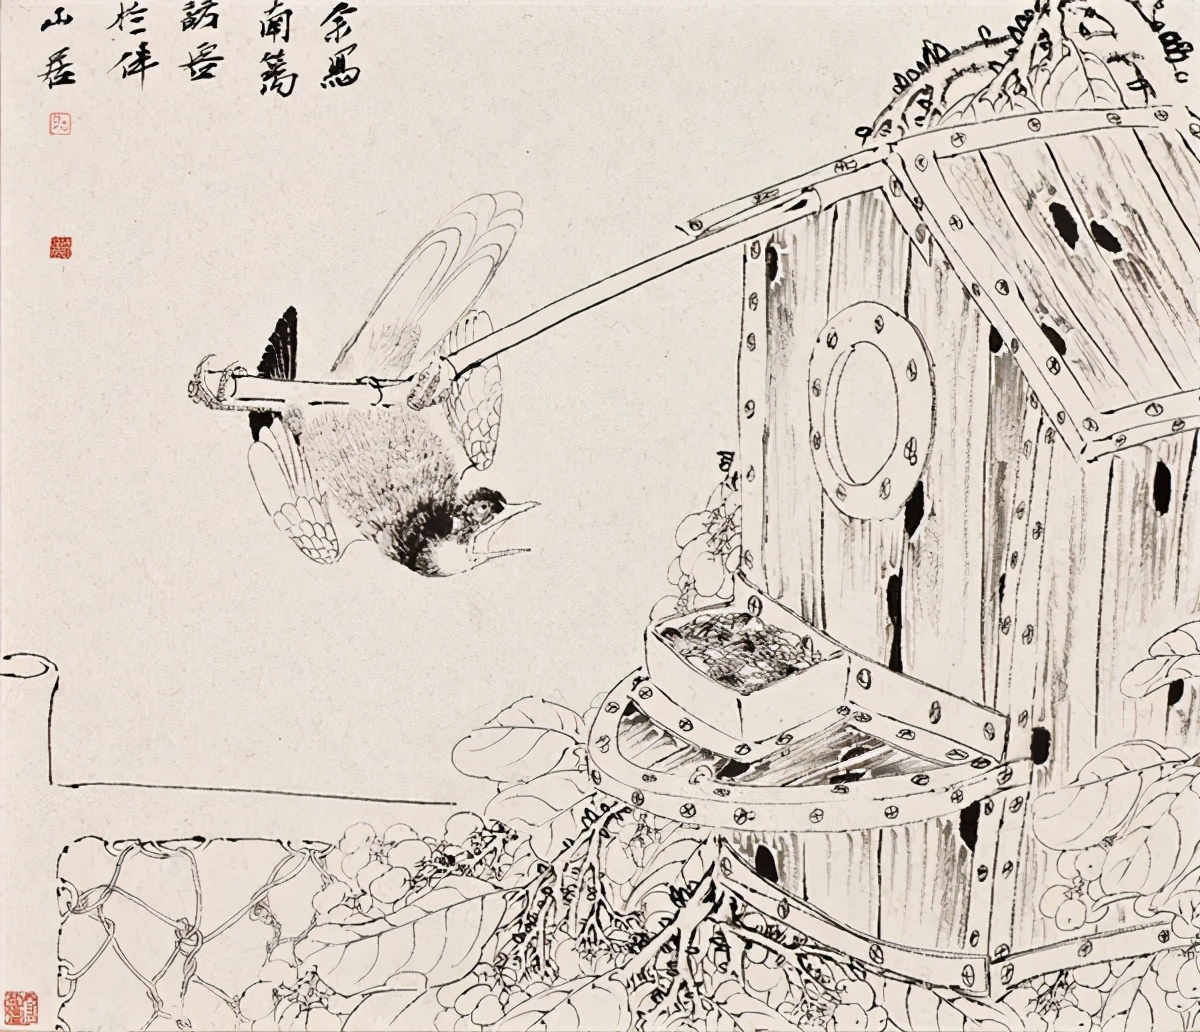 中央美院贾国强“意象传承·中国花鸟画作品巡展”首站在山东举行